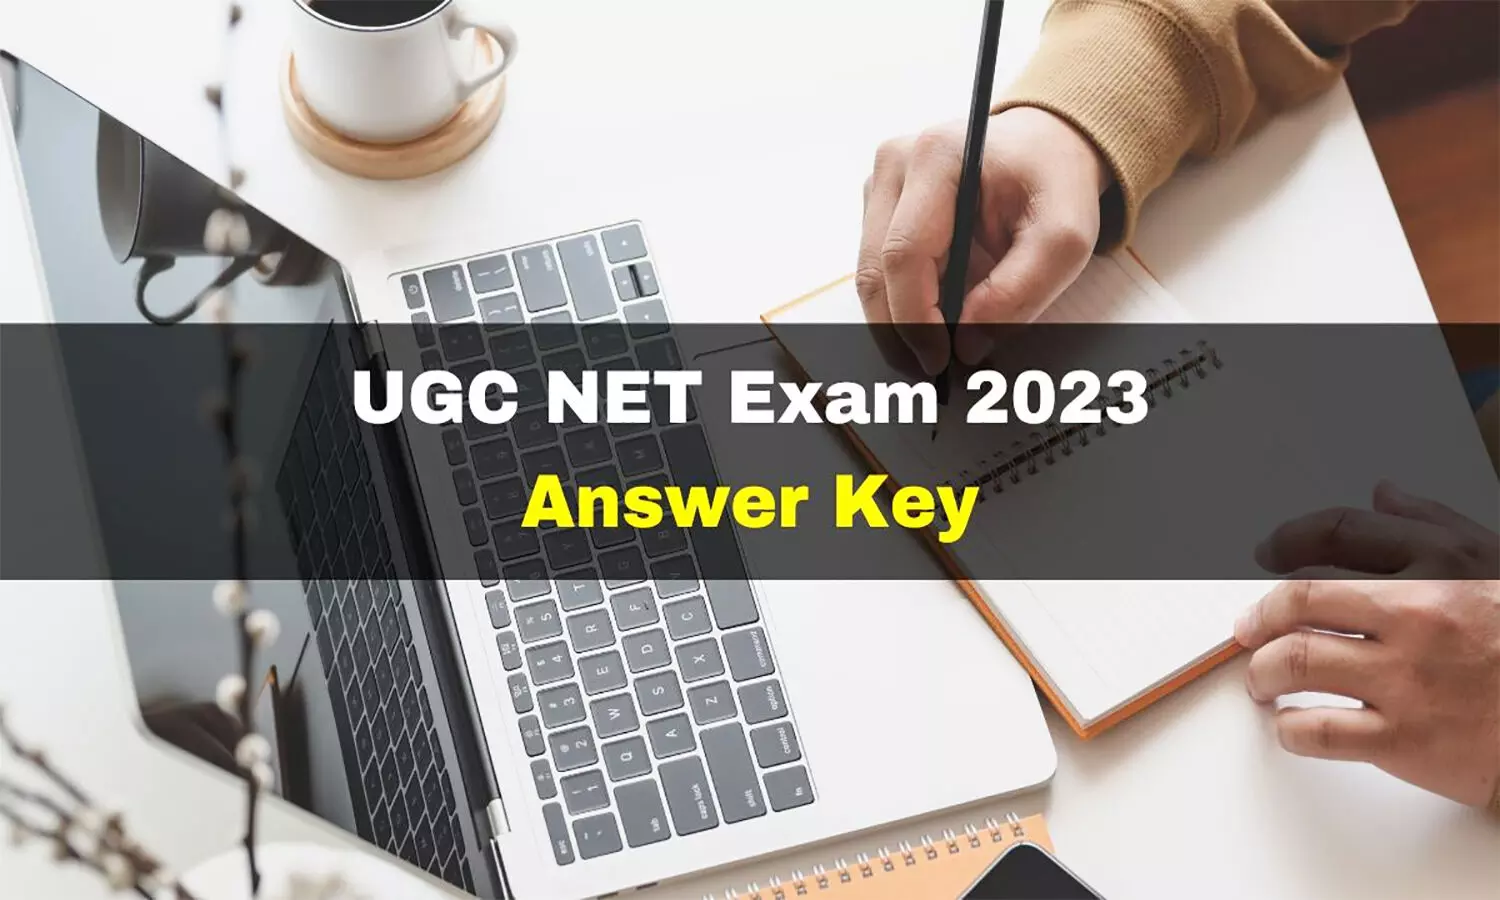 UGC NET 2023 Answer Key: यूजीसी नेट दिसंबर प्रोविजनल आंसर-की जारी, इस लिंक ugcnet.nta.nic.in से करें डाउनलोड